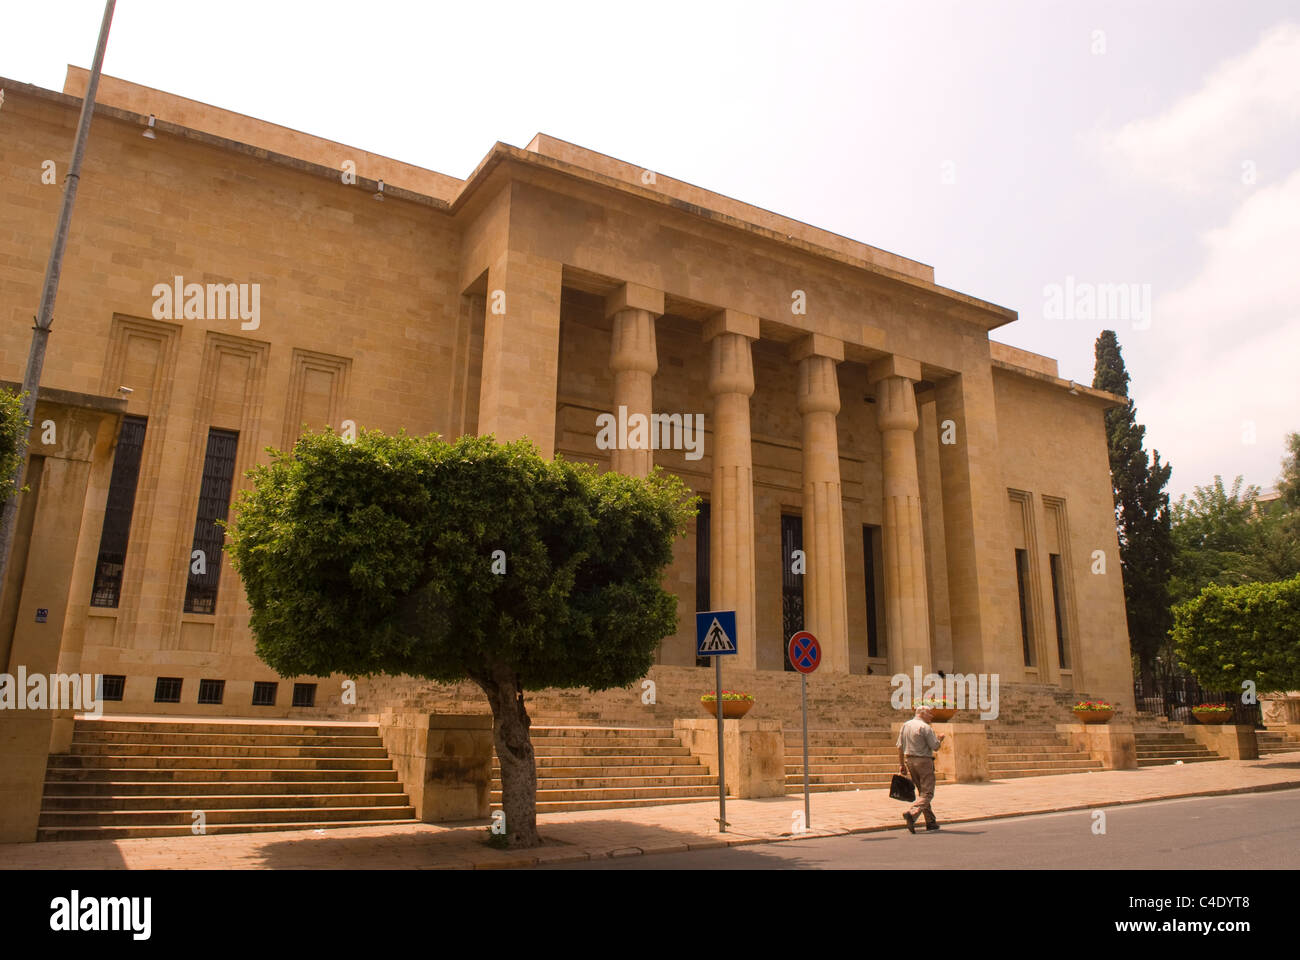 Facade of the National Museum, Badaro, Beirut, Lebanon. Stock Photo